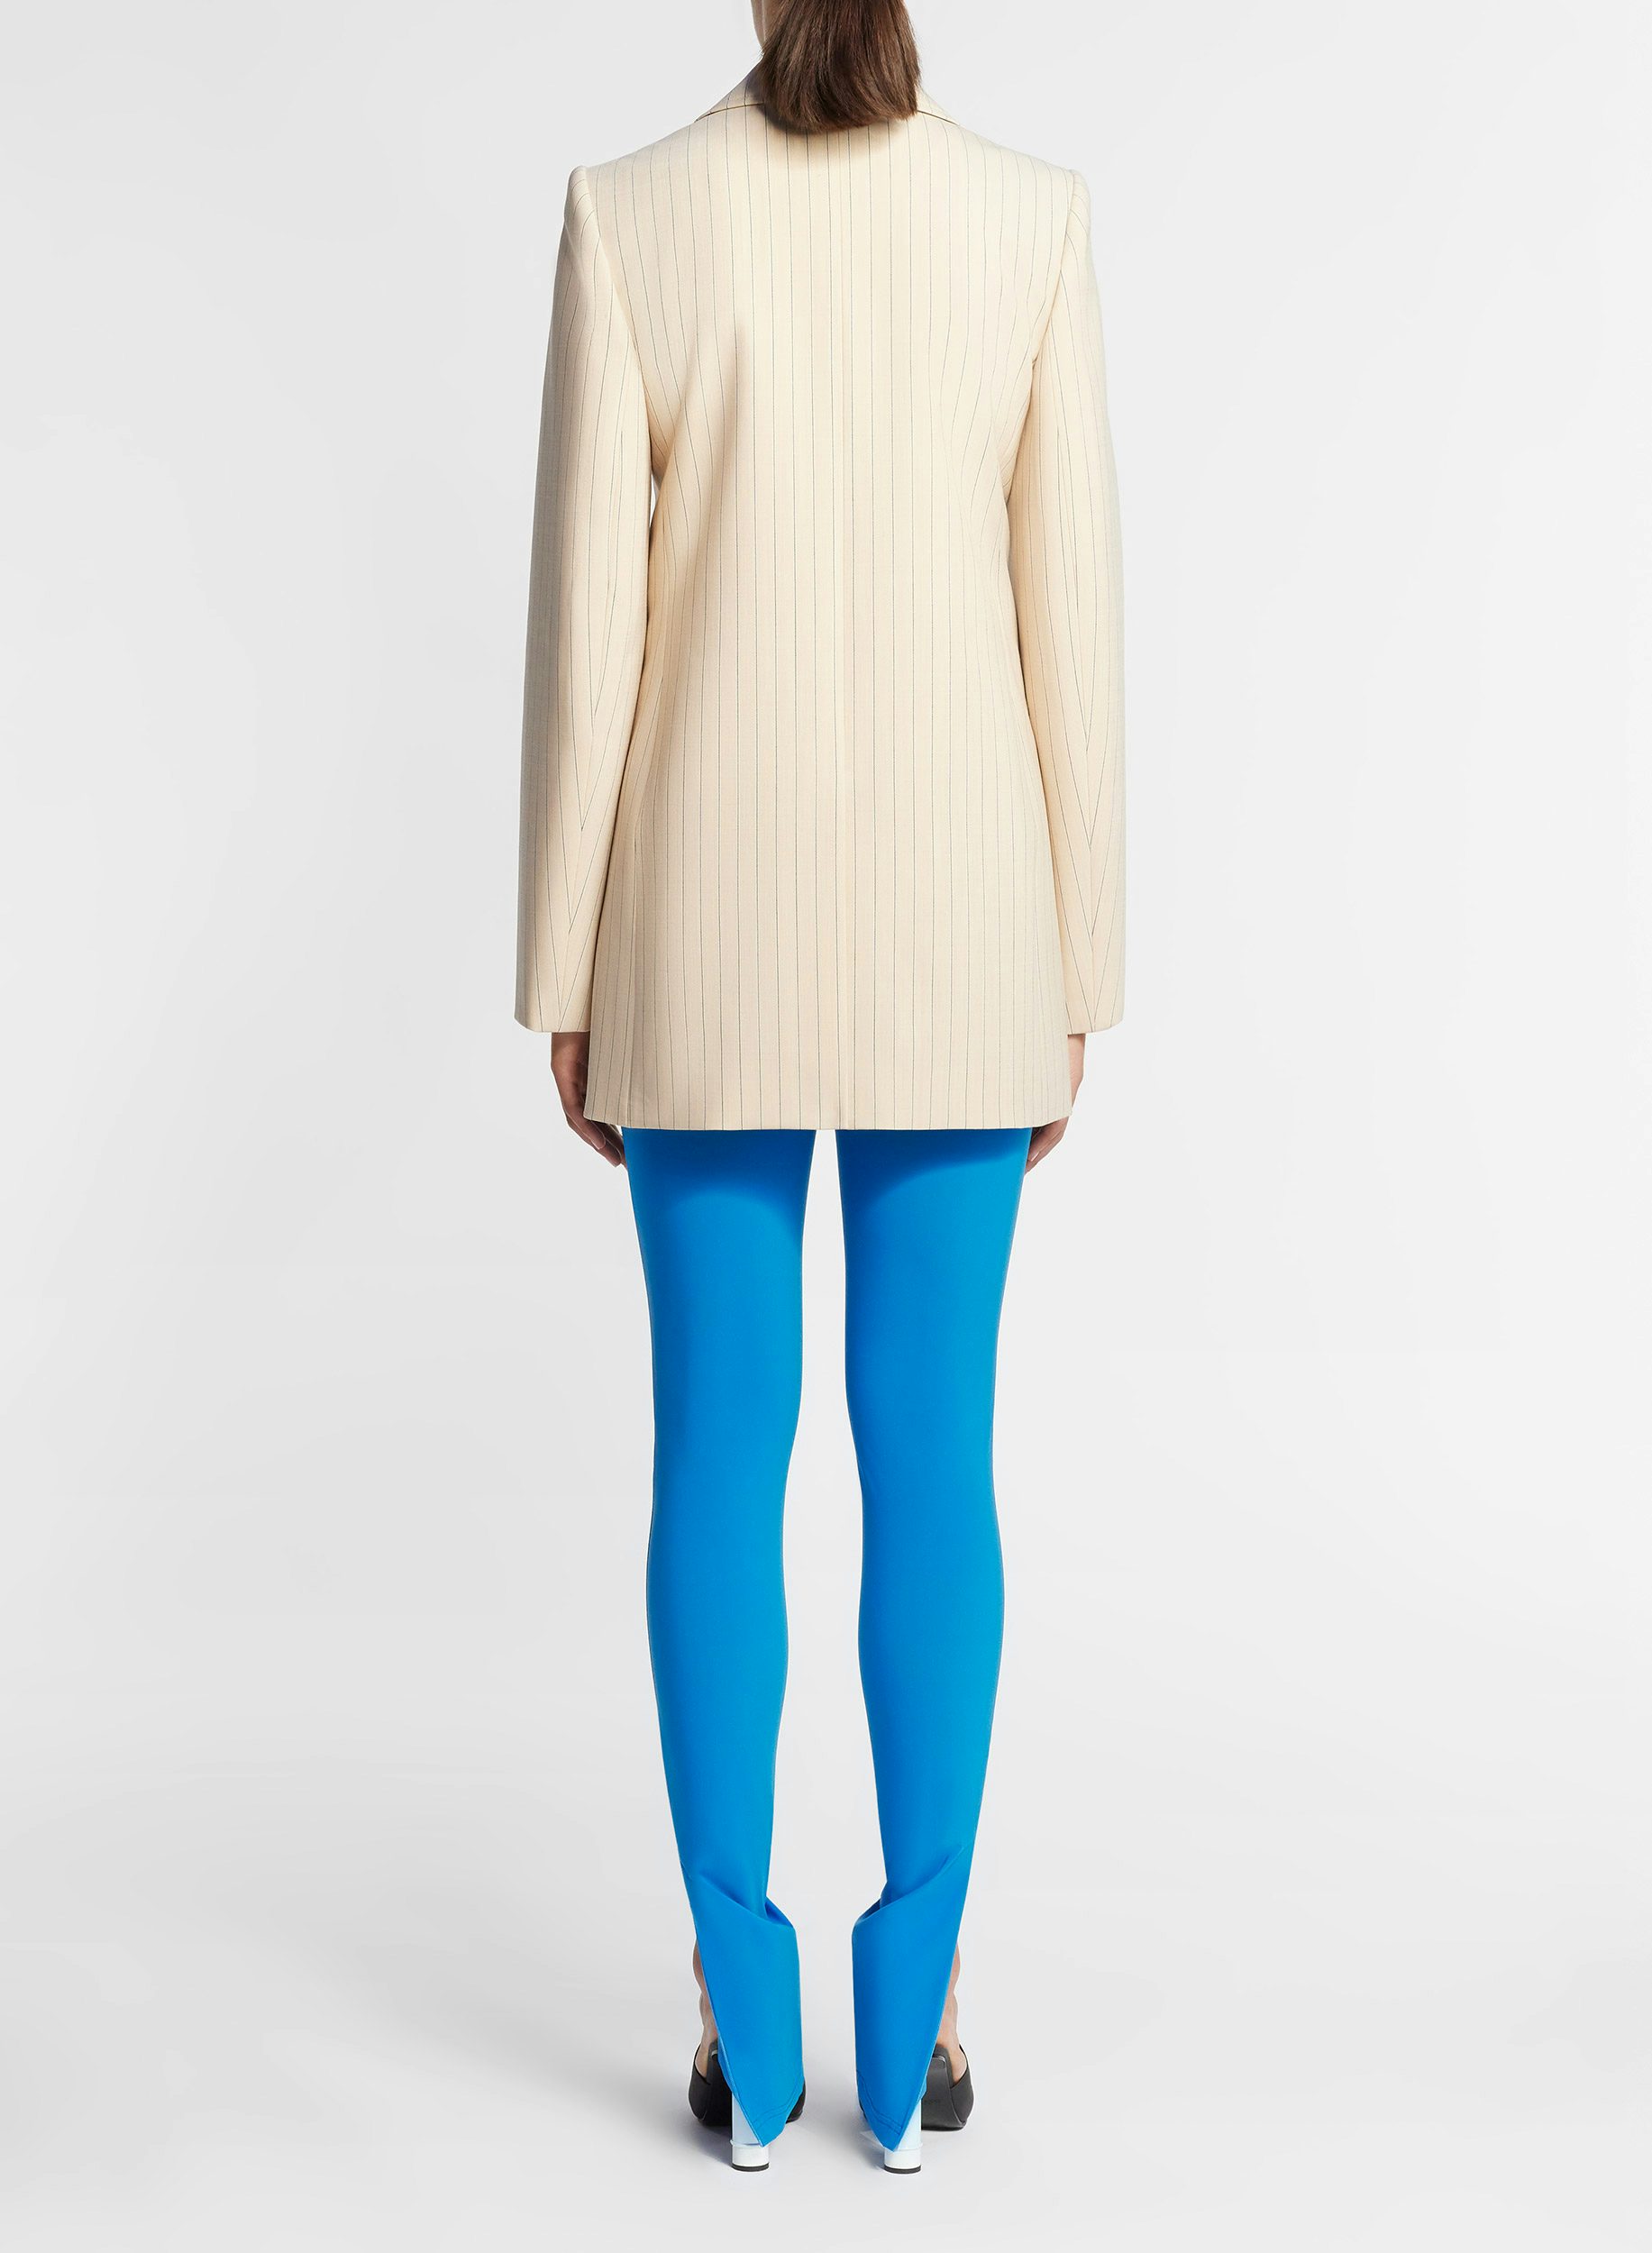 Blue leggings in light neoprene - Nina Ricci